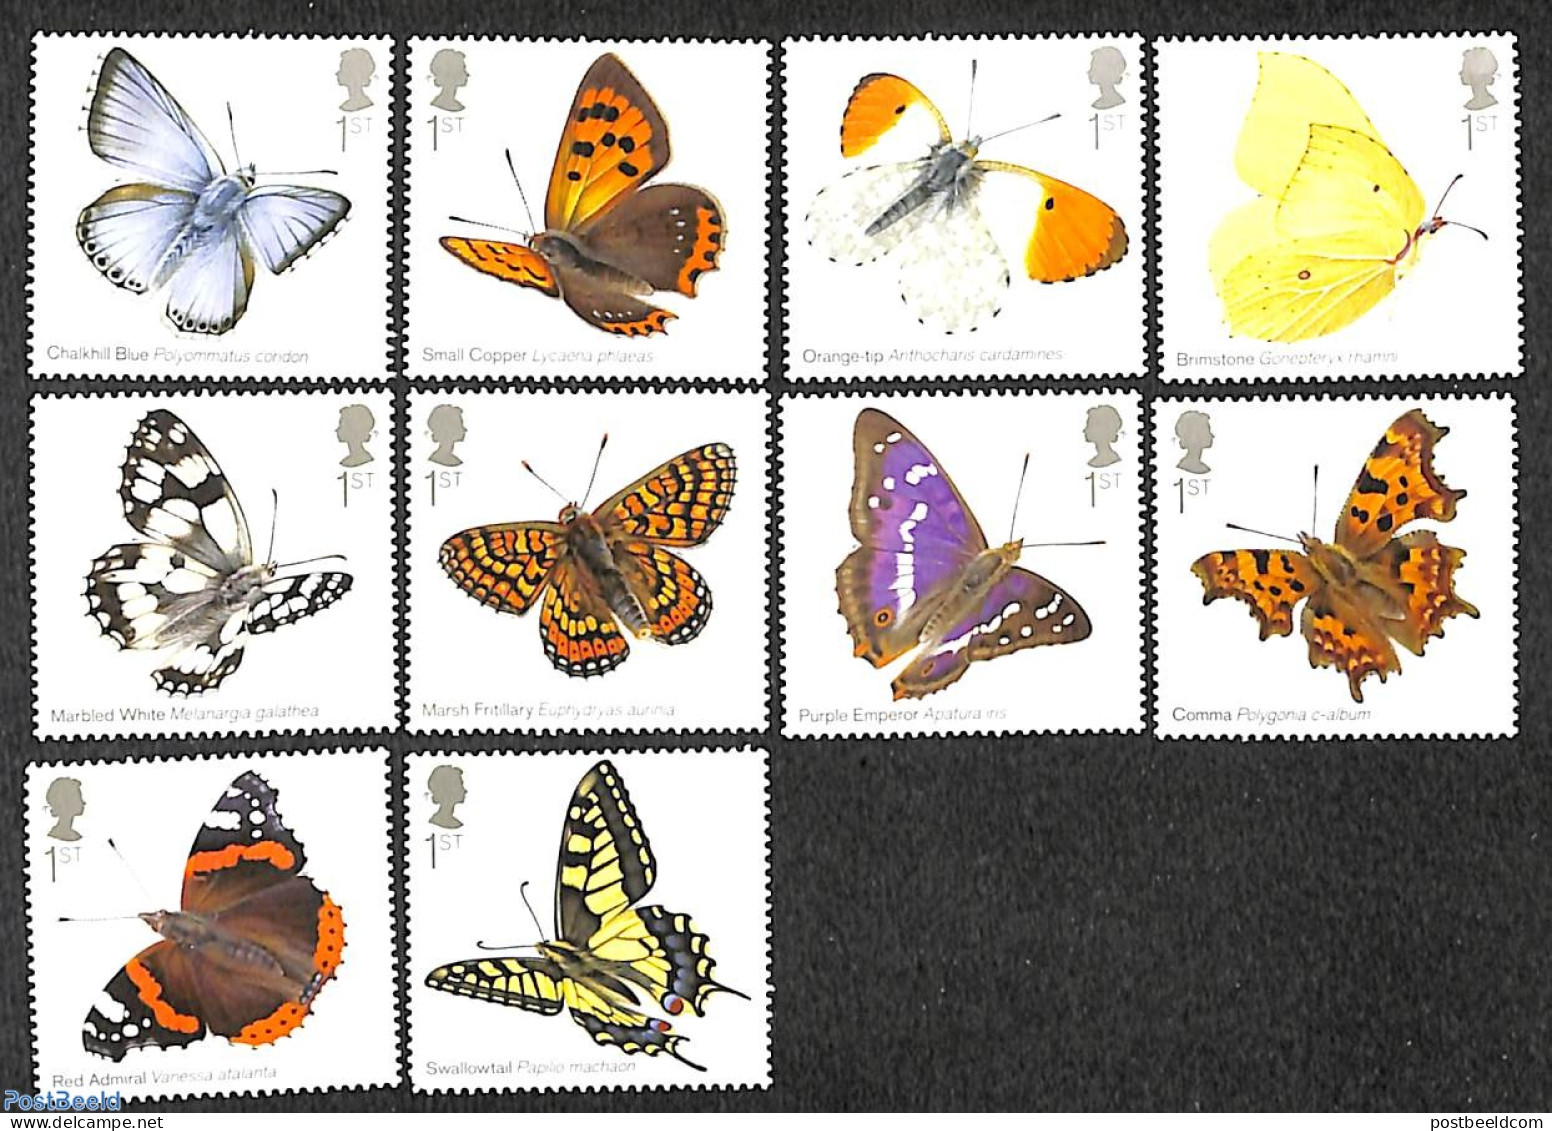 Great Britain 2013 Butterflies 10v, Mint NH, Nature - Butterflies - Ungebraucht